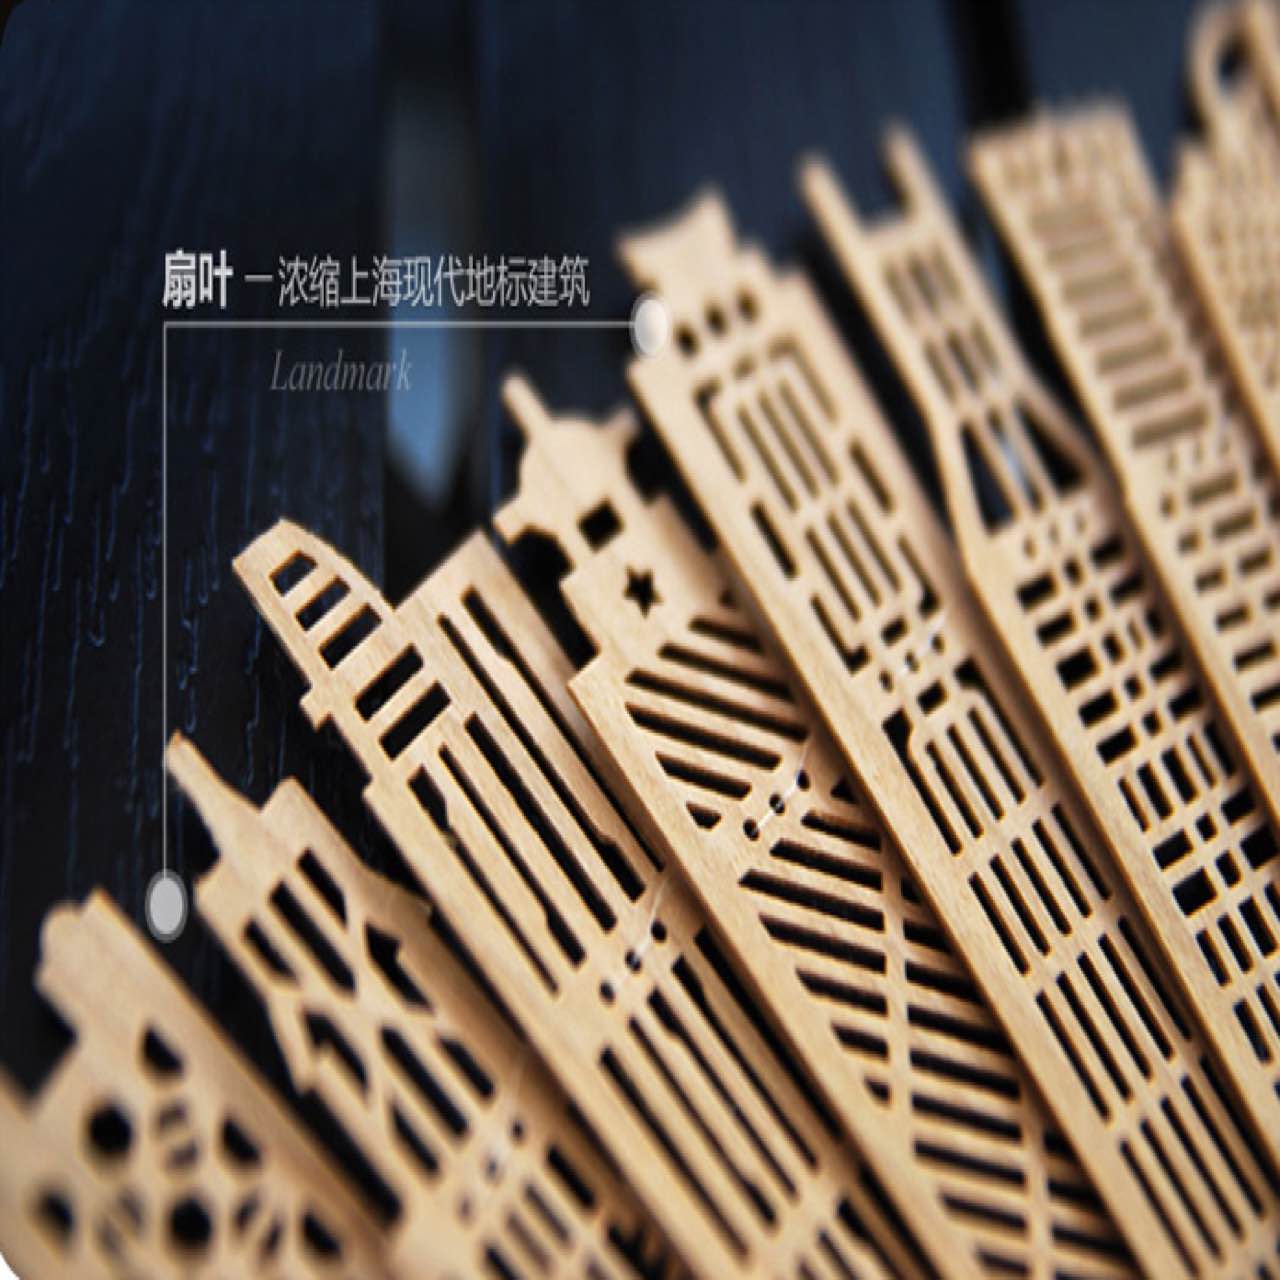 王星记 扇子折扇中国风男 女士礼品檀香镂空工艺广告创意扇子定制